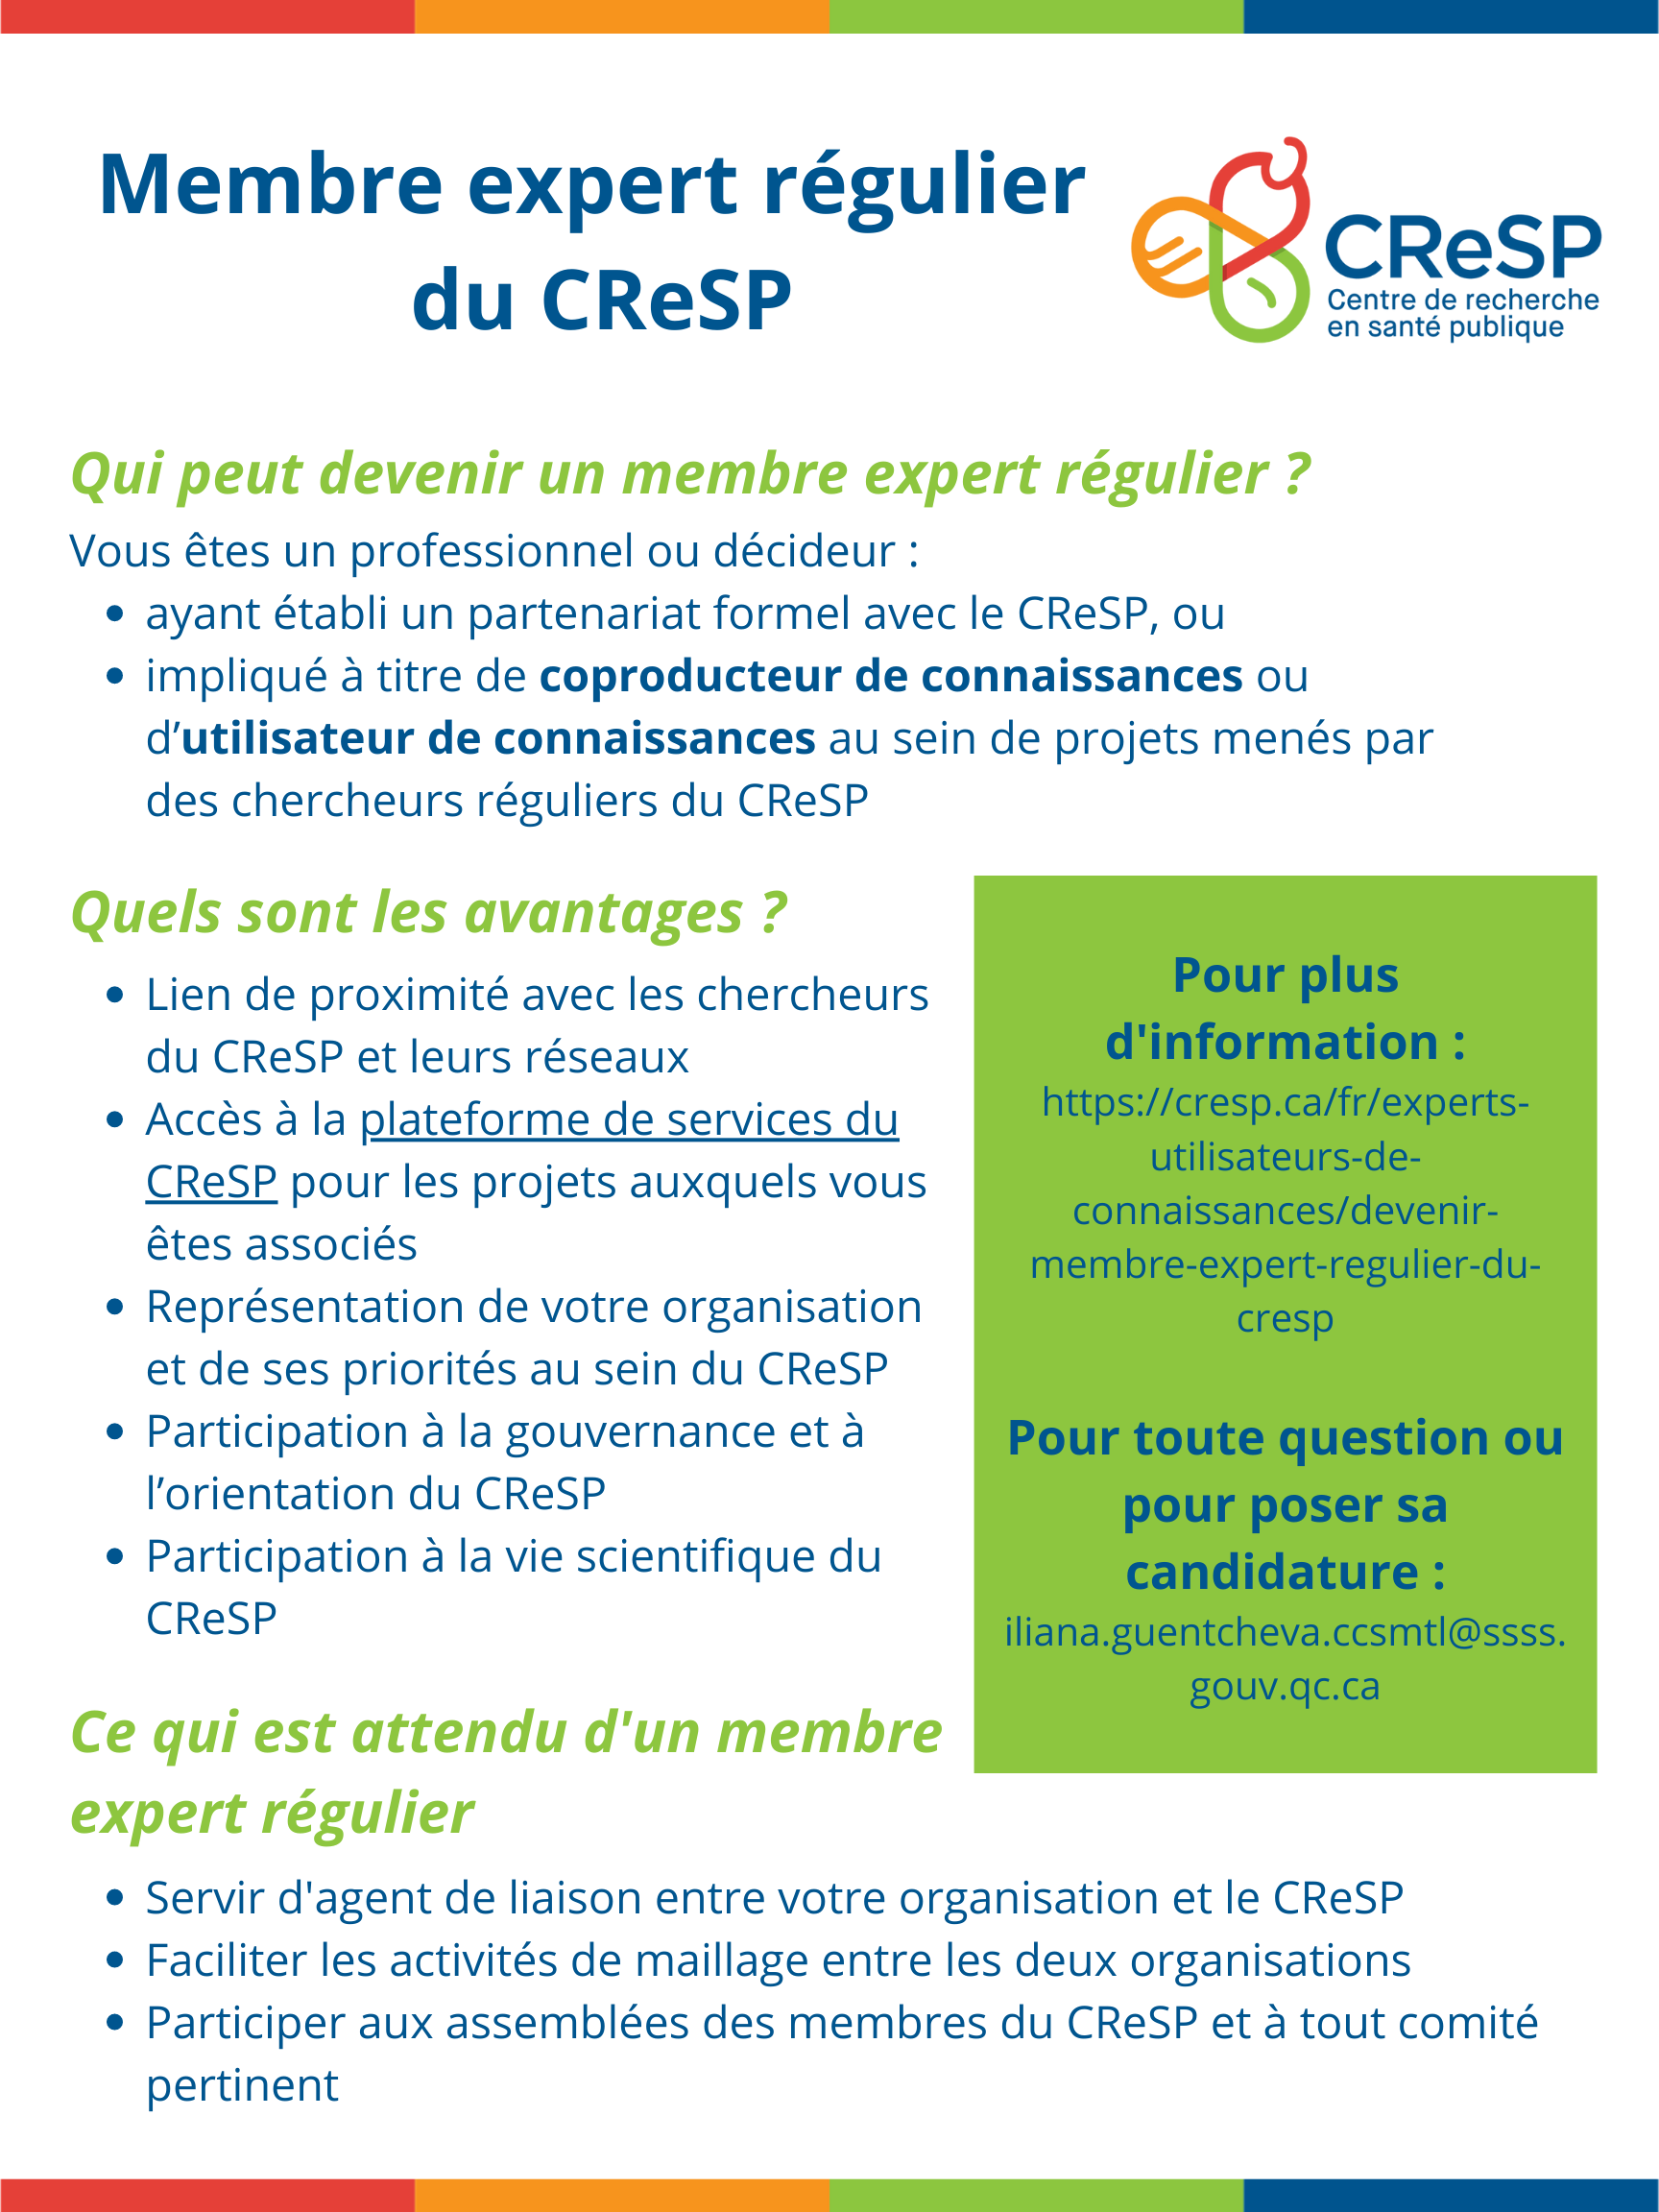 Membres experts réguliers CReSP_Infographie 